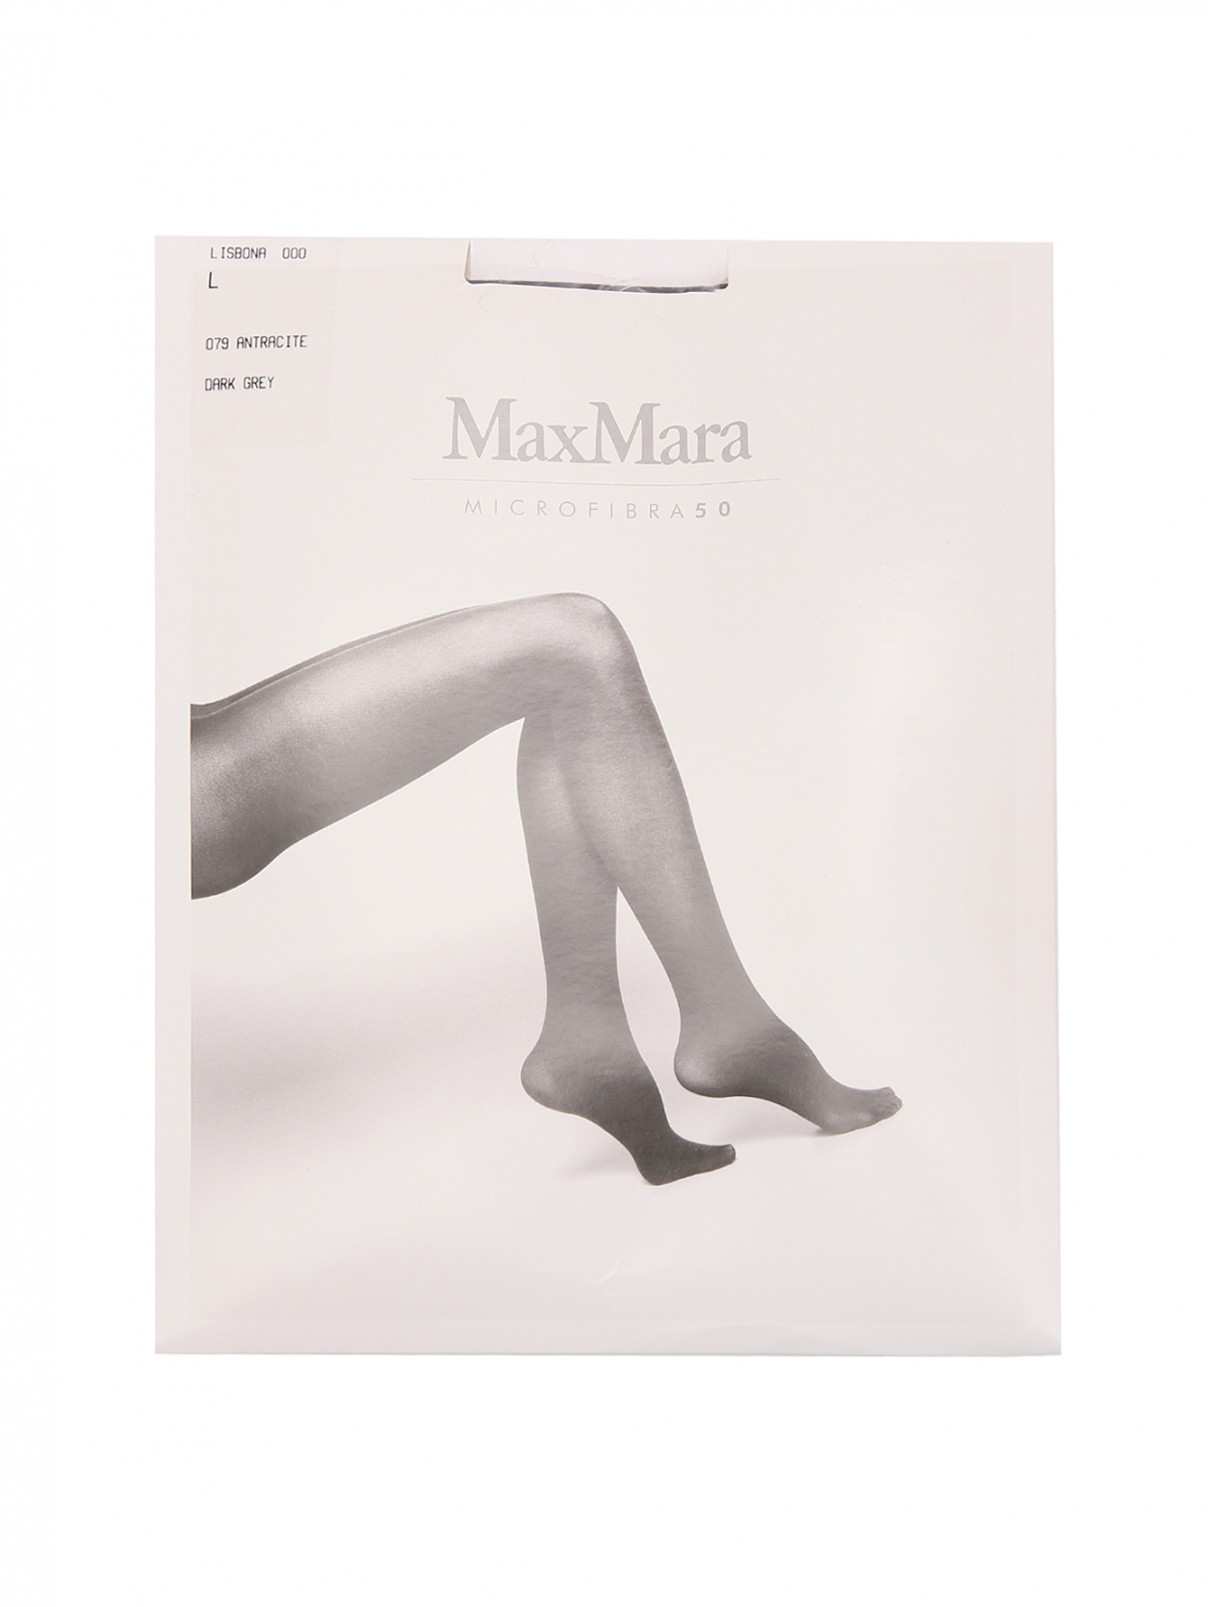 Колготки Microfibra 50 Max Mara  –  Общий вид  – Цвет:  Черный